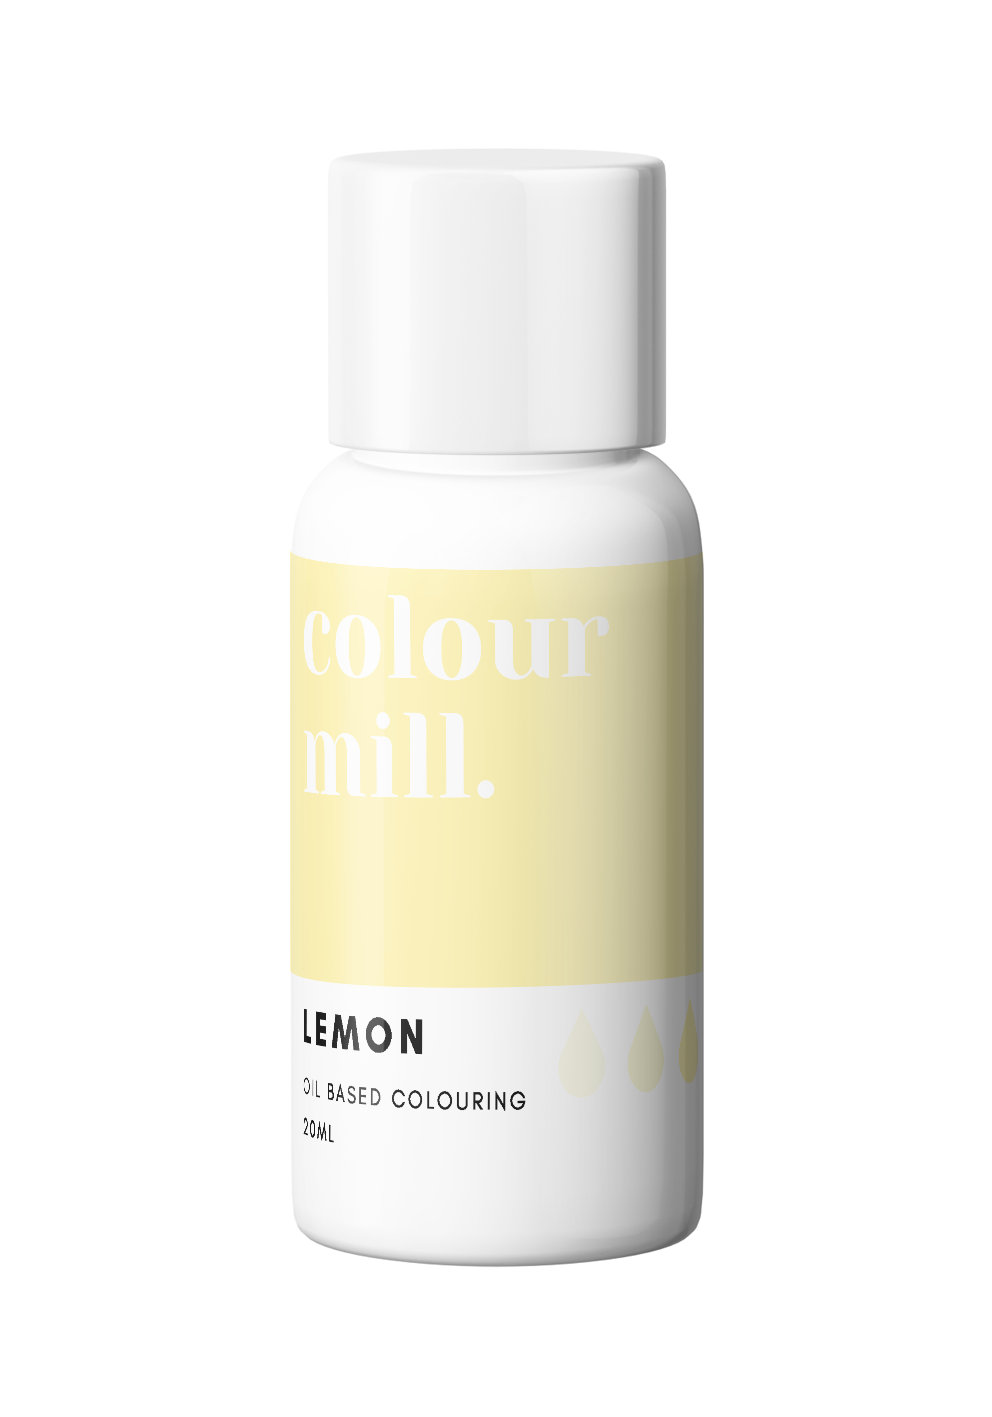 Colour Mill - Lemon - 20ml - Sans E171